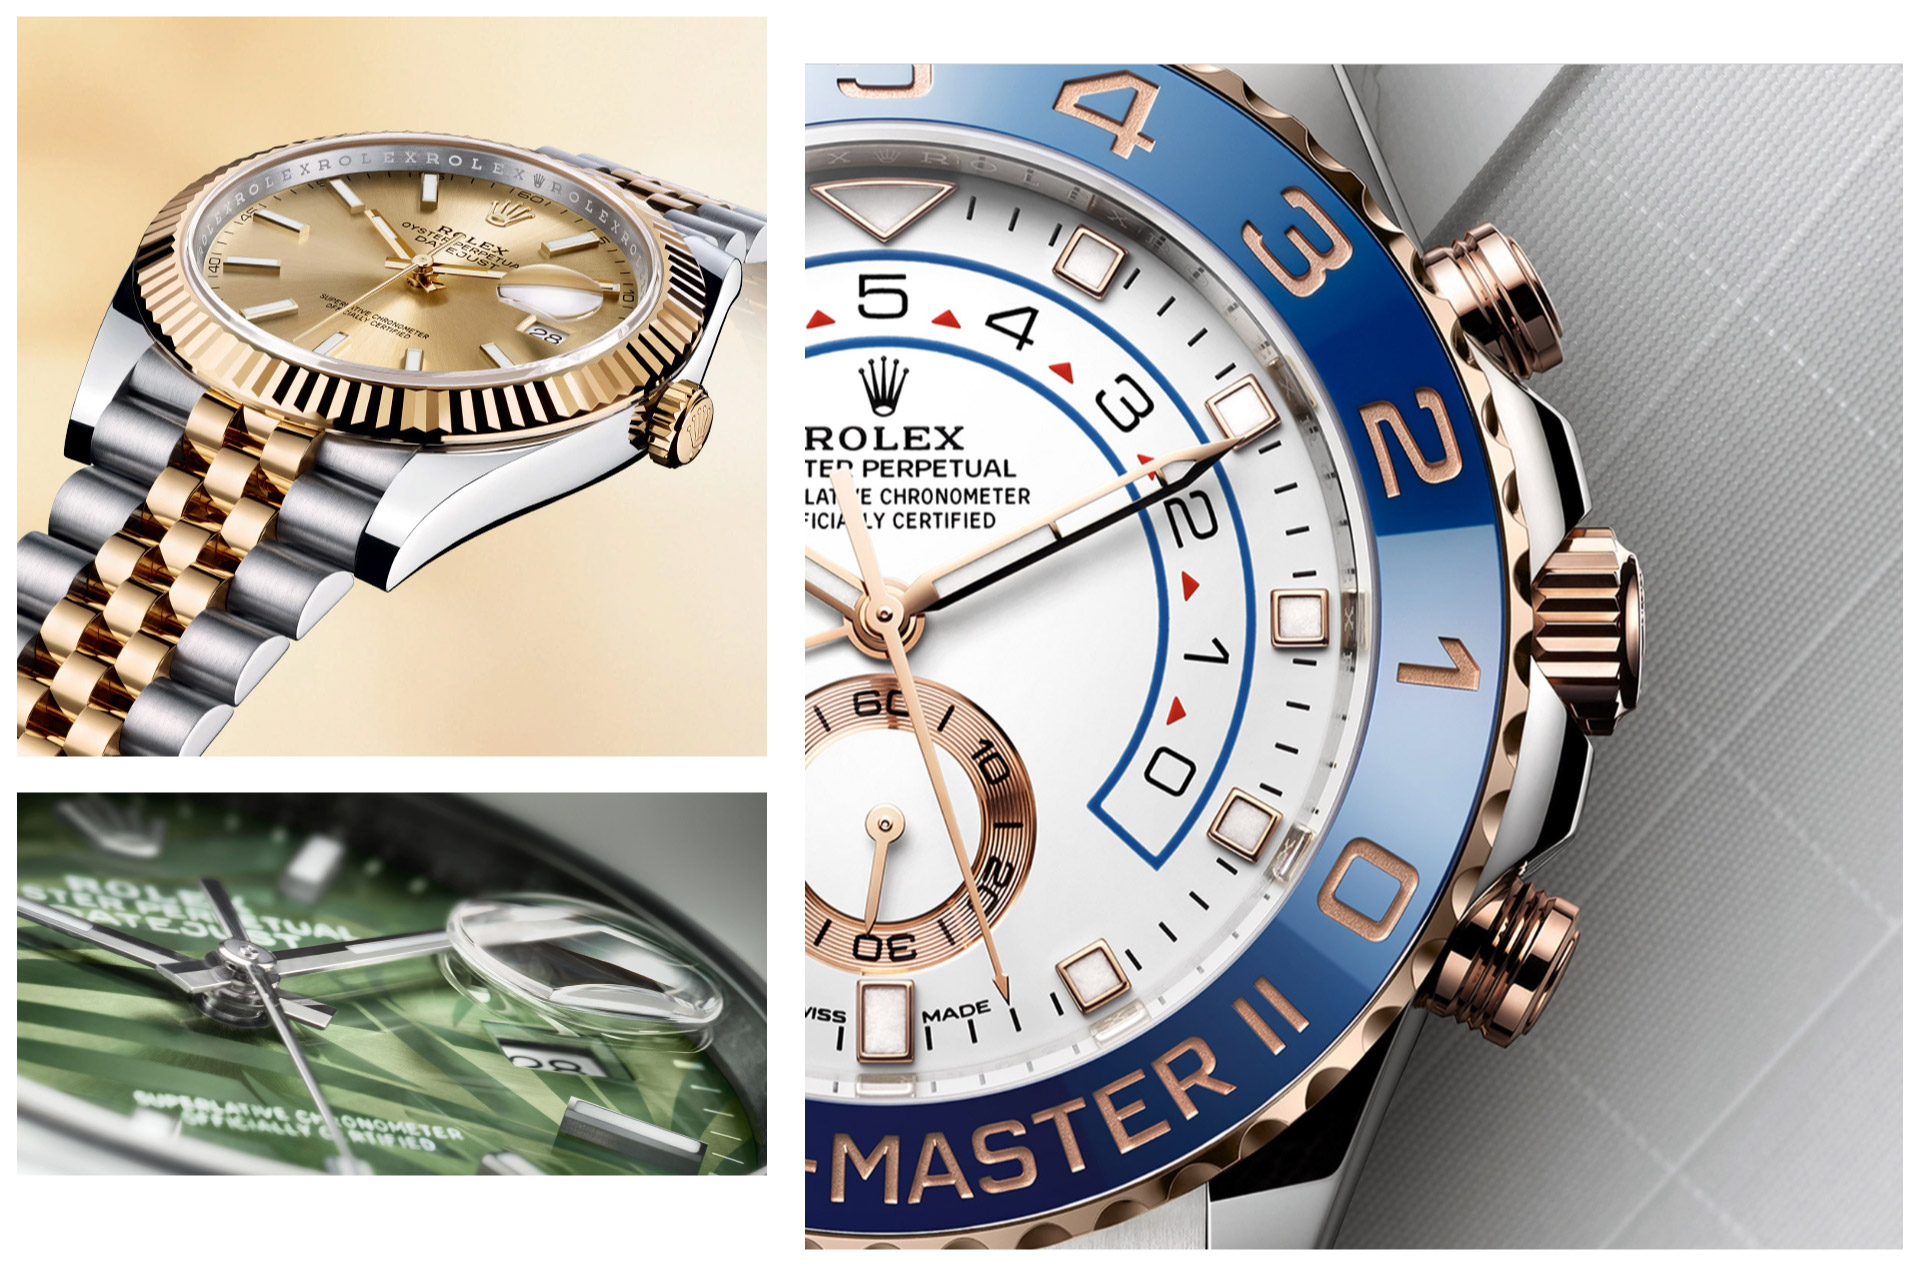 đồng hồ Rolex fake 1-1 Datejust 116231